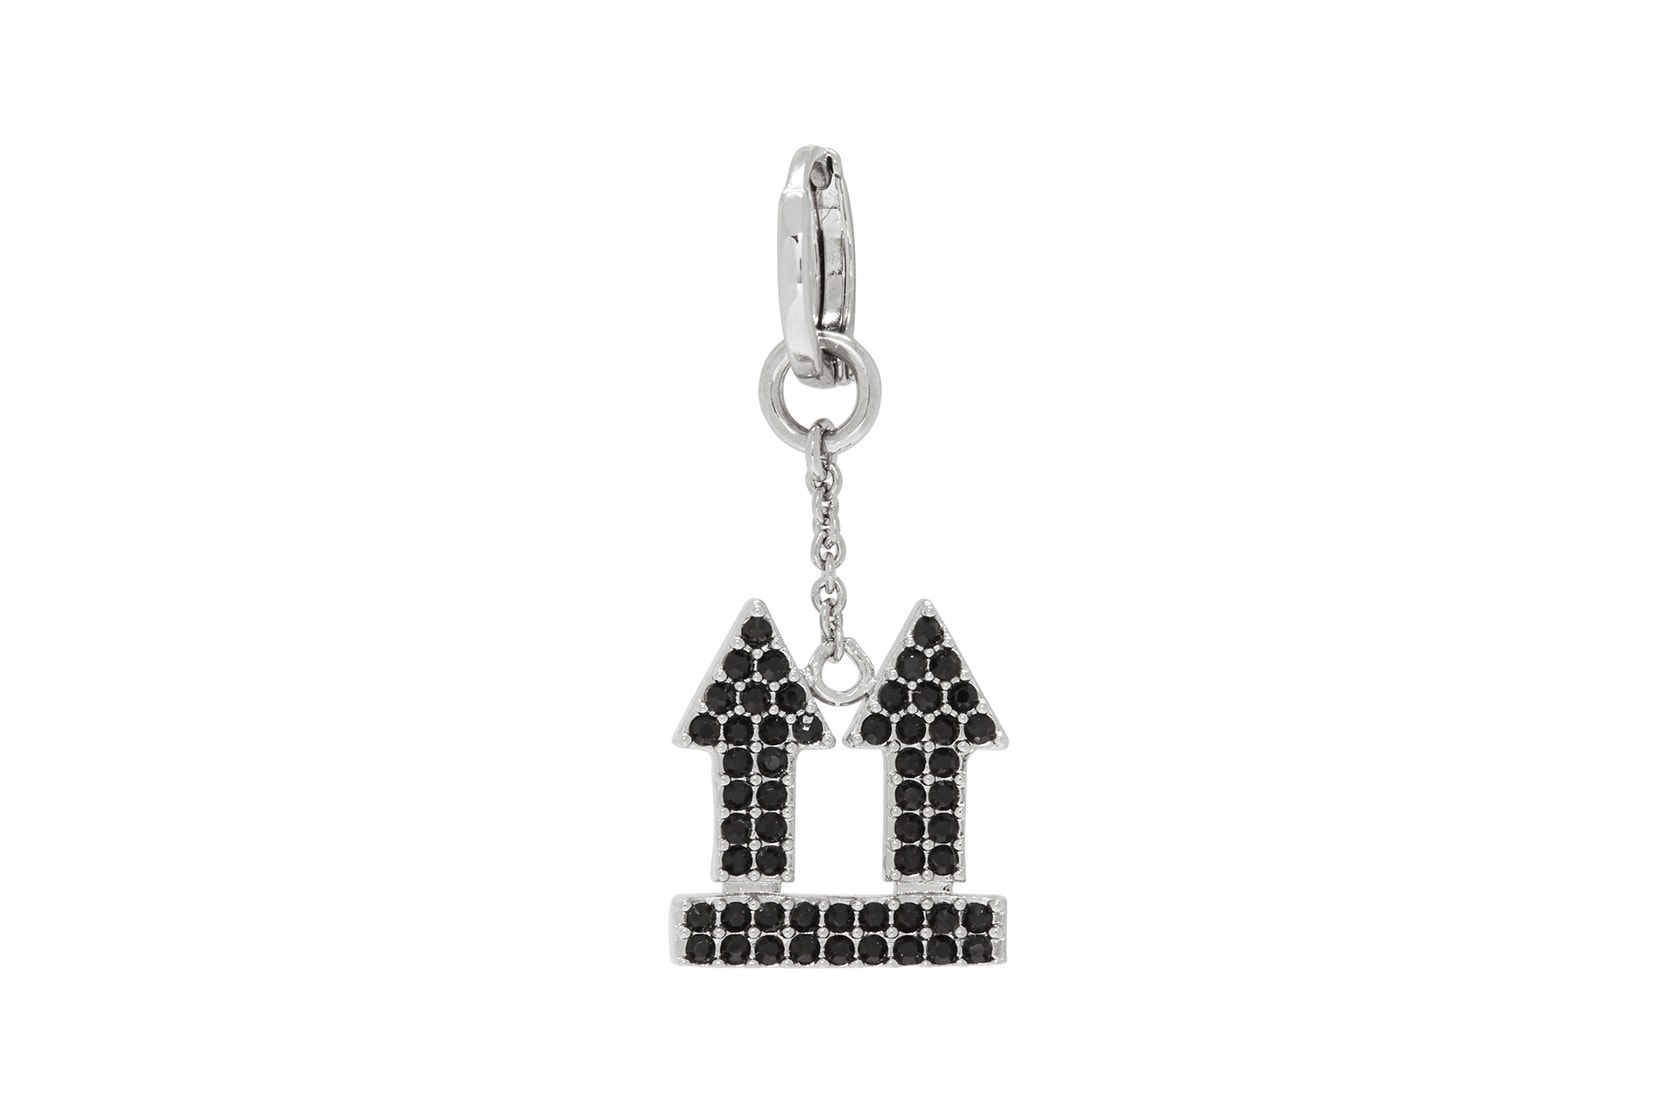 off-white earrings jewelry arrow black silver